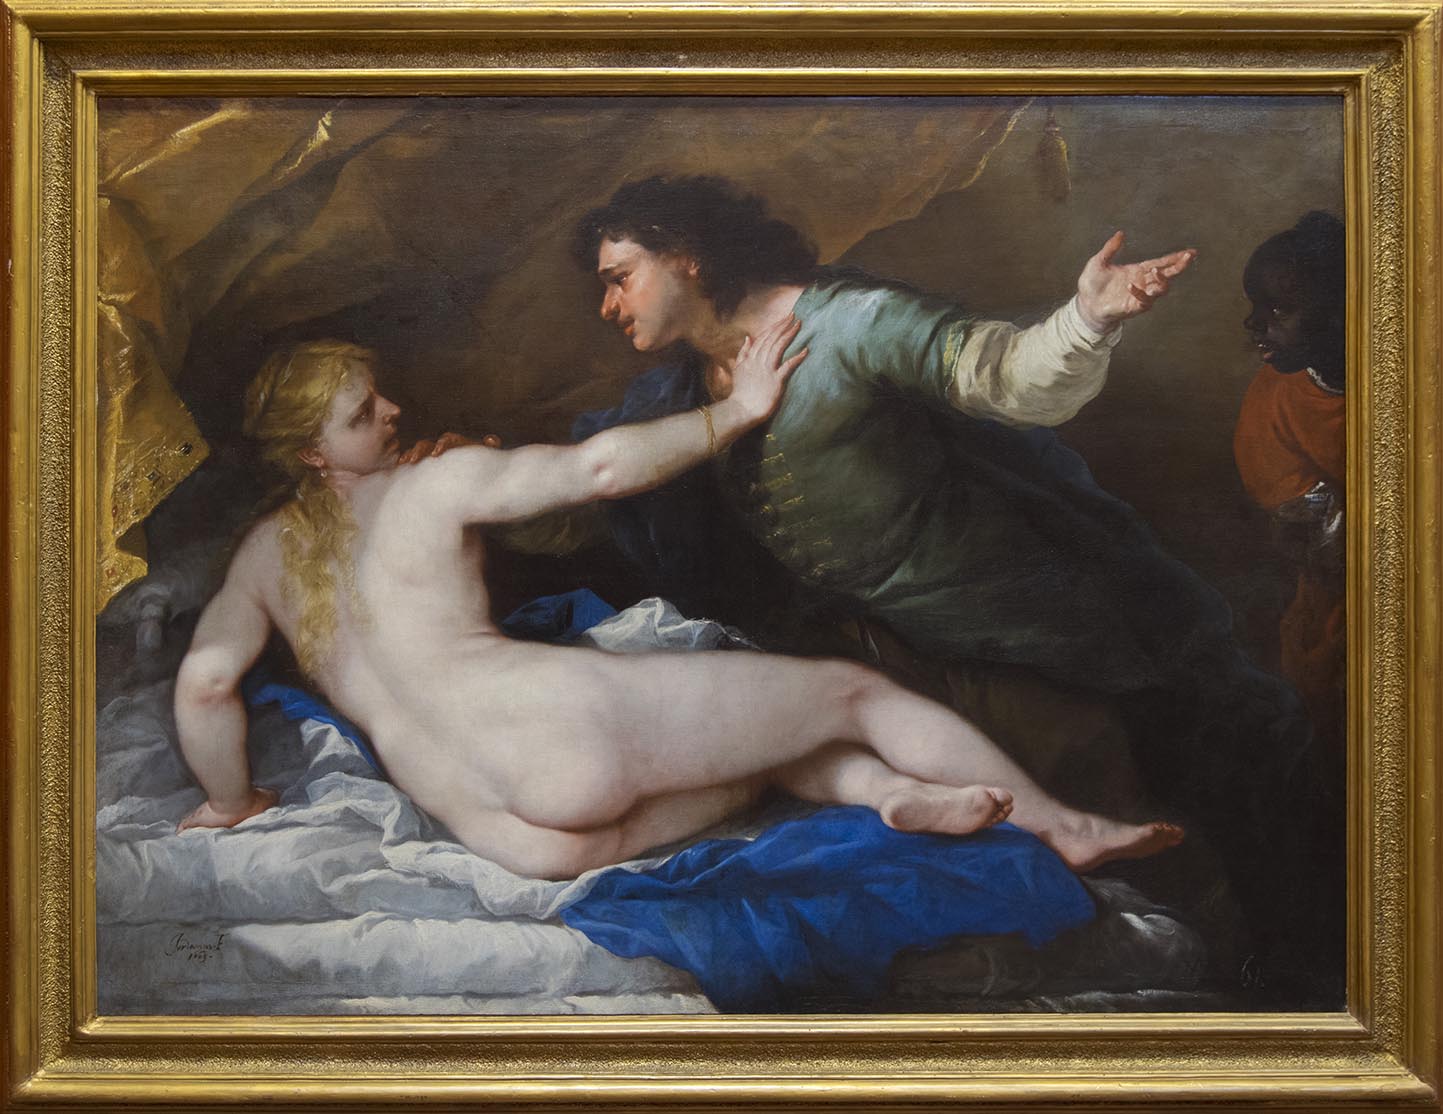 Luca Giordano, Lucrezia e Tarquinio,
1663, 
olio su tela
Napoli, Museo e Real Bosco di Capodimonte
(Legato d’Avalos 1882)